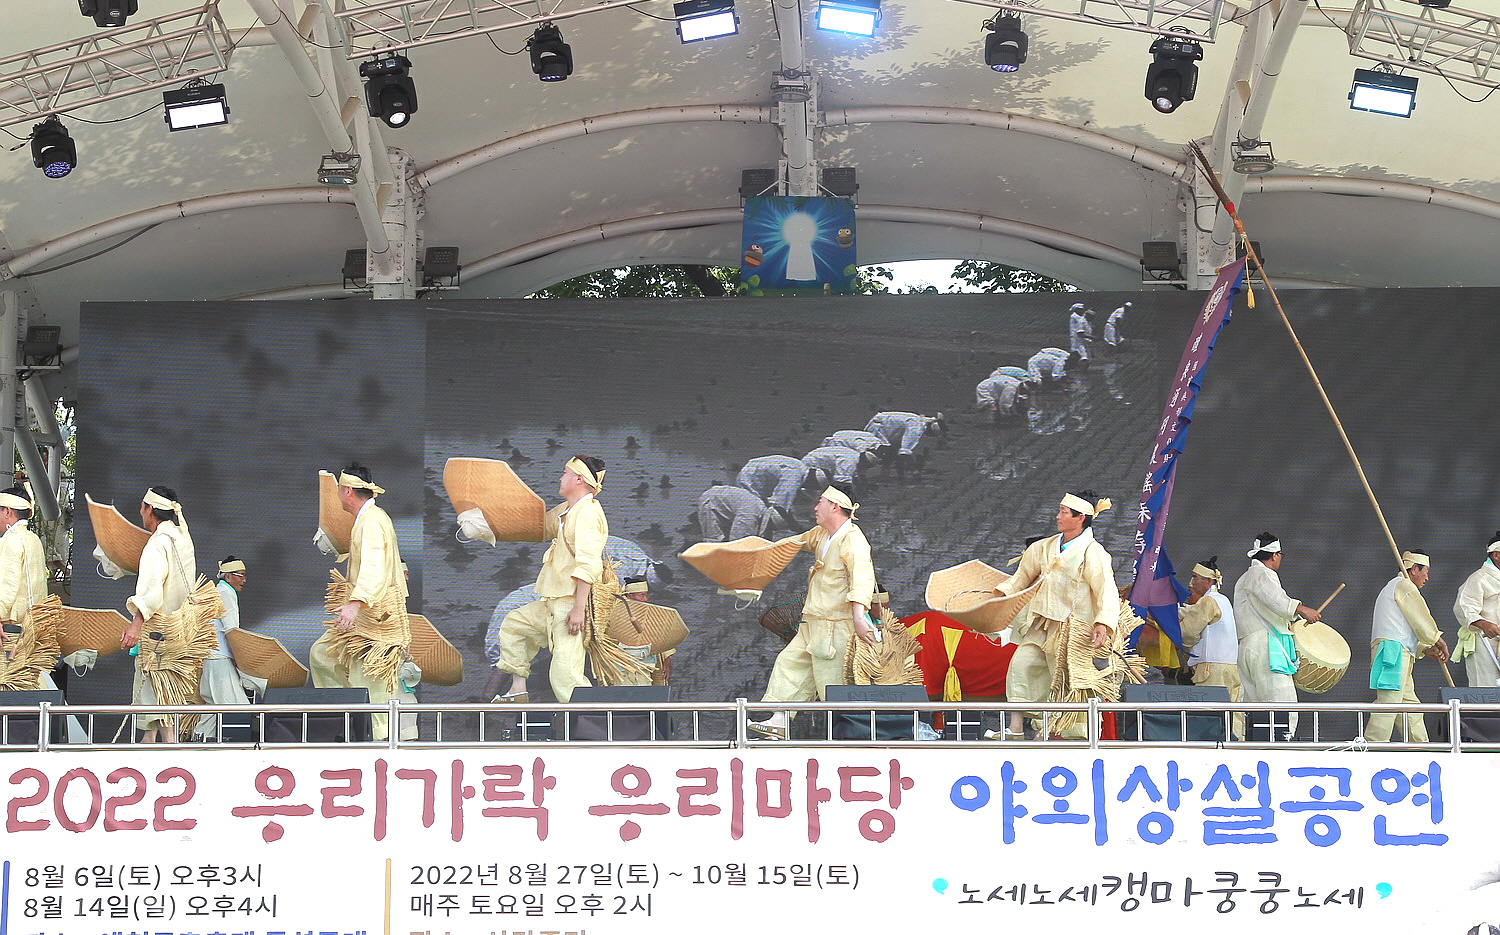 SEMI 곤충엑스포 2022 예천곤충축제, 우리가락 우리마당 야외상설공연 2회차 개최